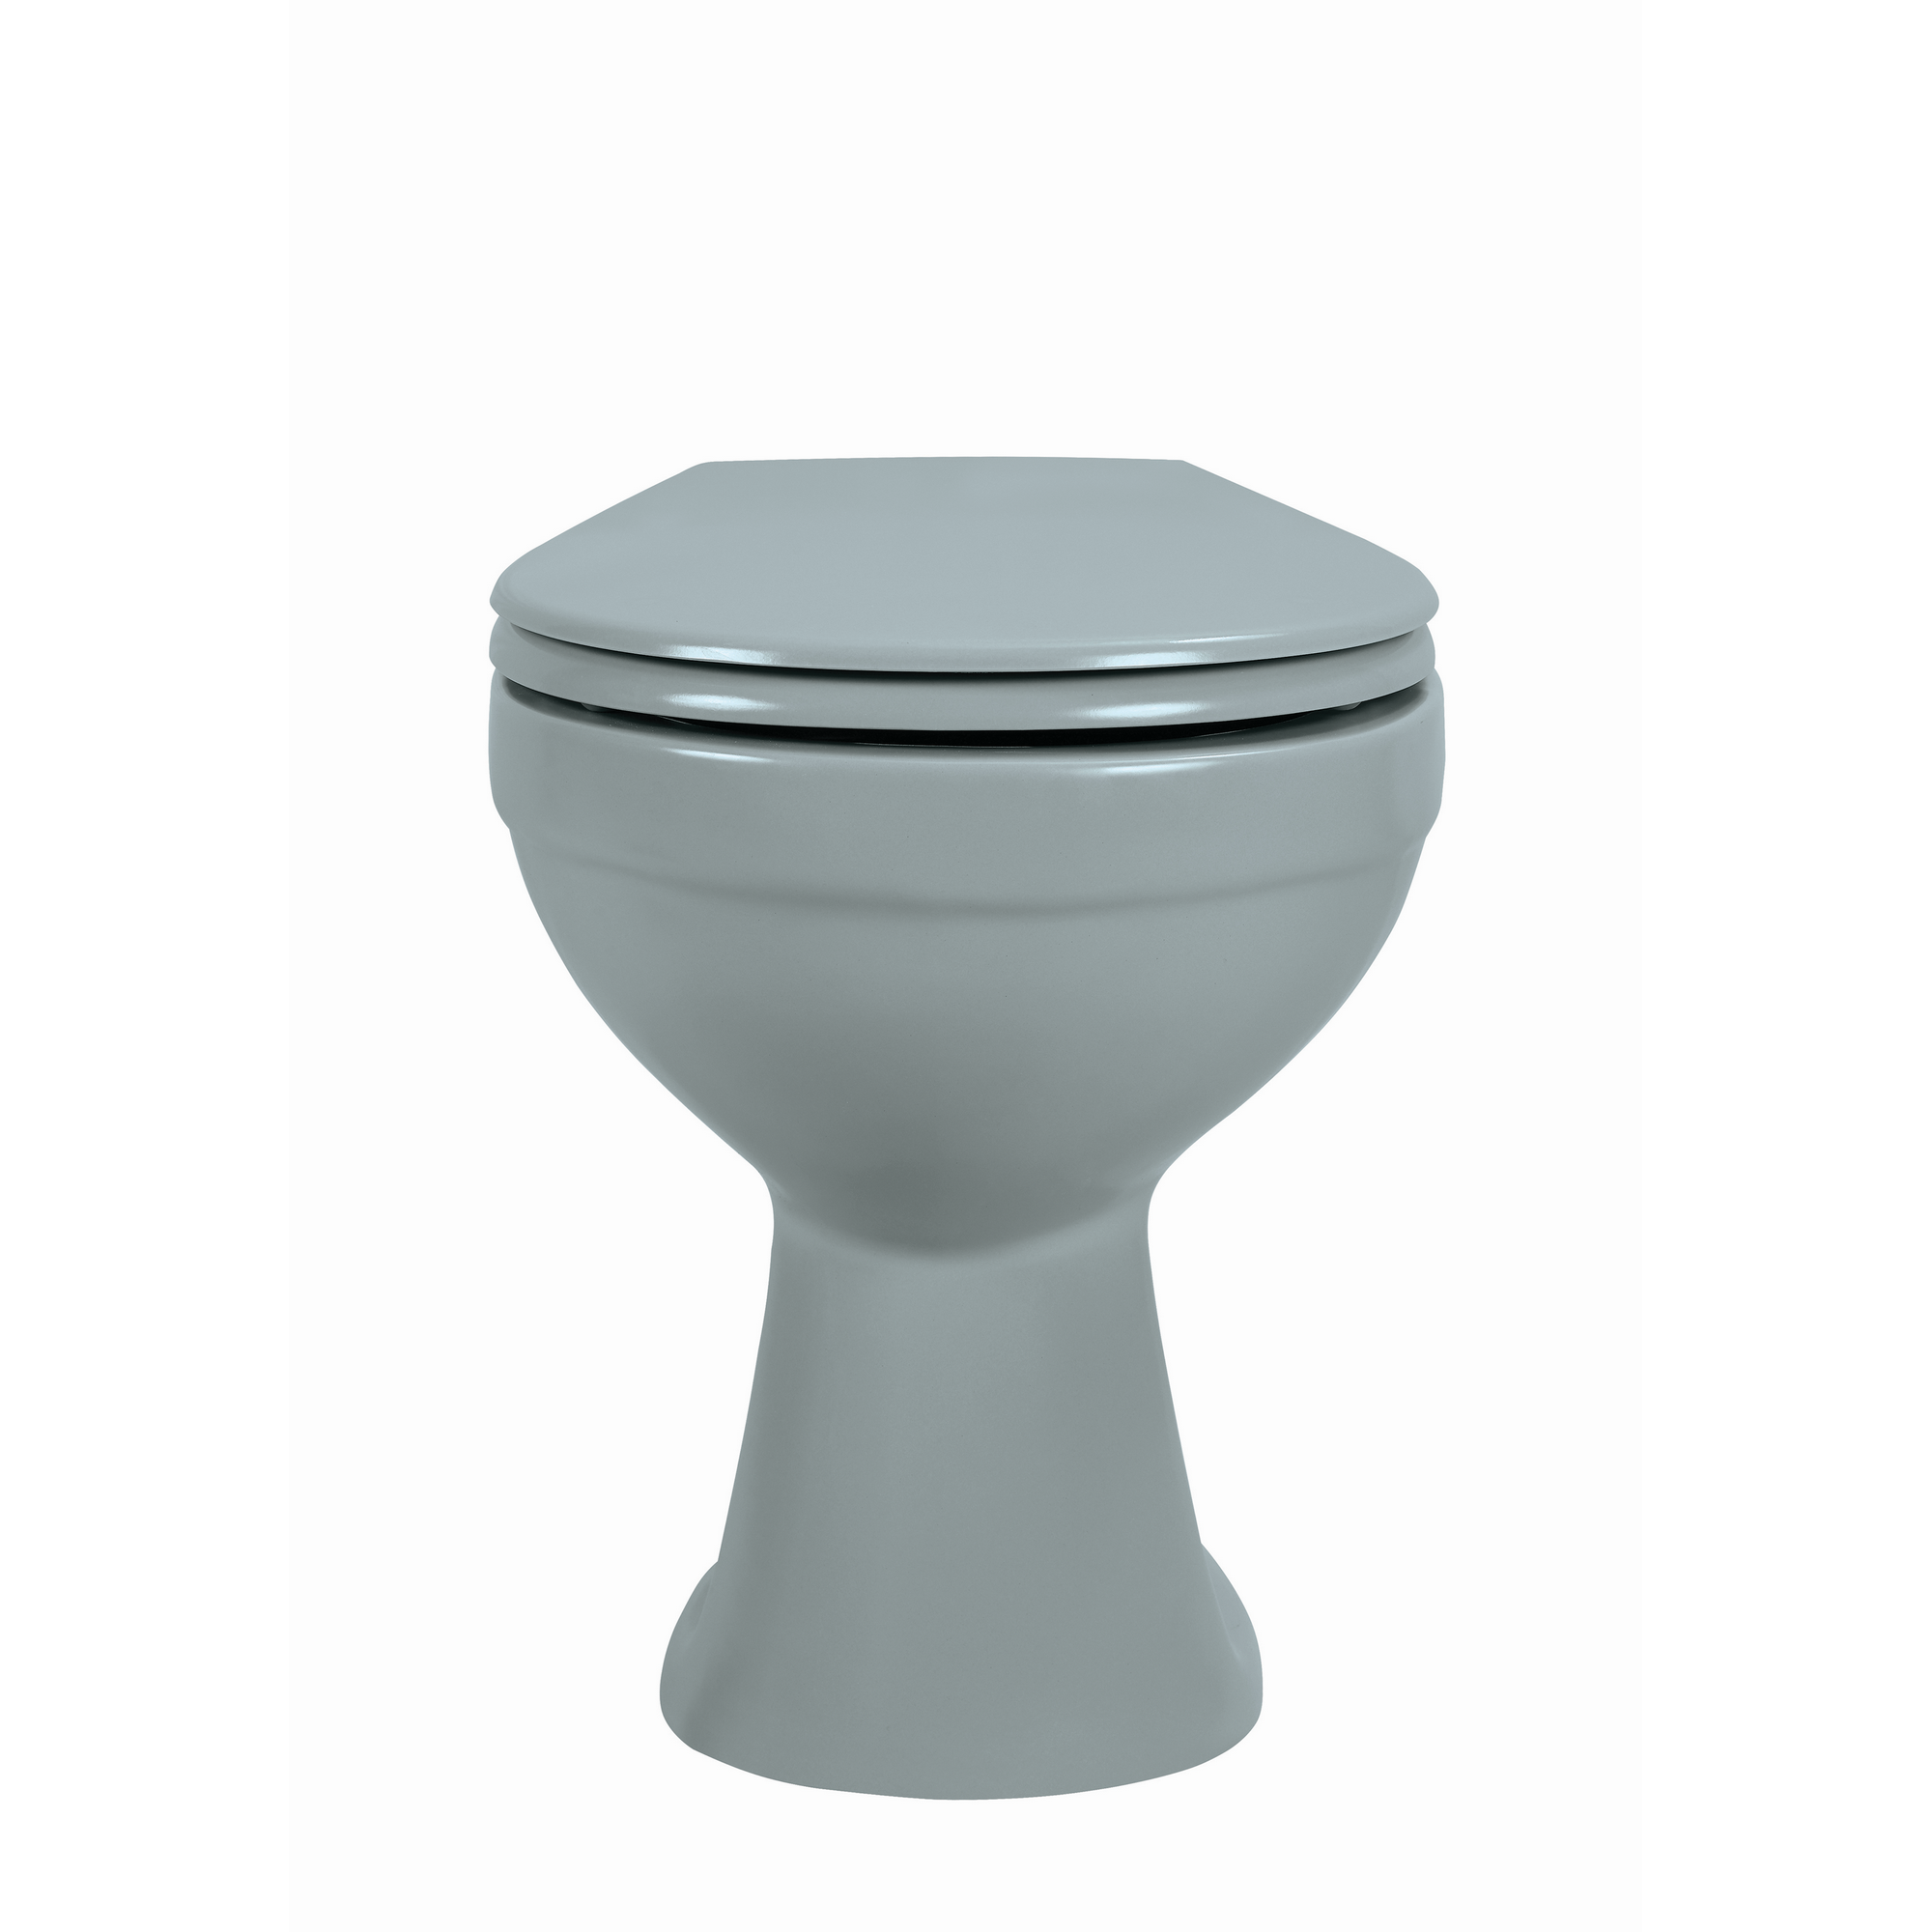 Stand-WC Tiefspüler spülrandlos matt grau, ohne WC-Sitz + product picture